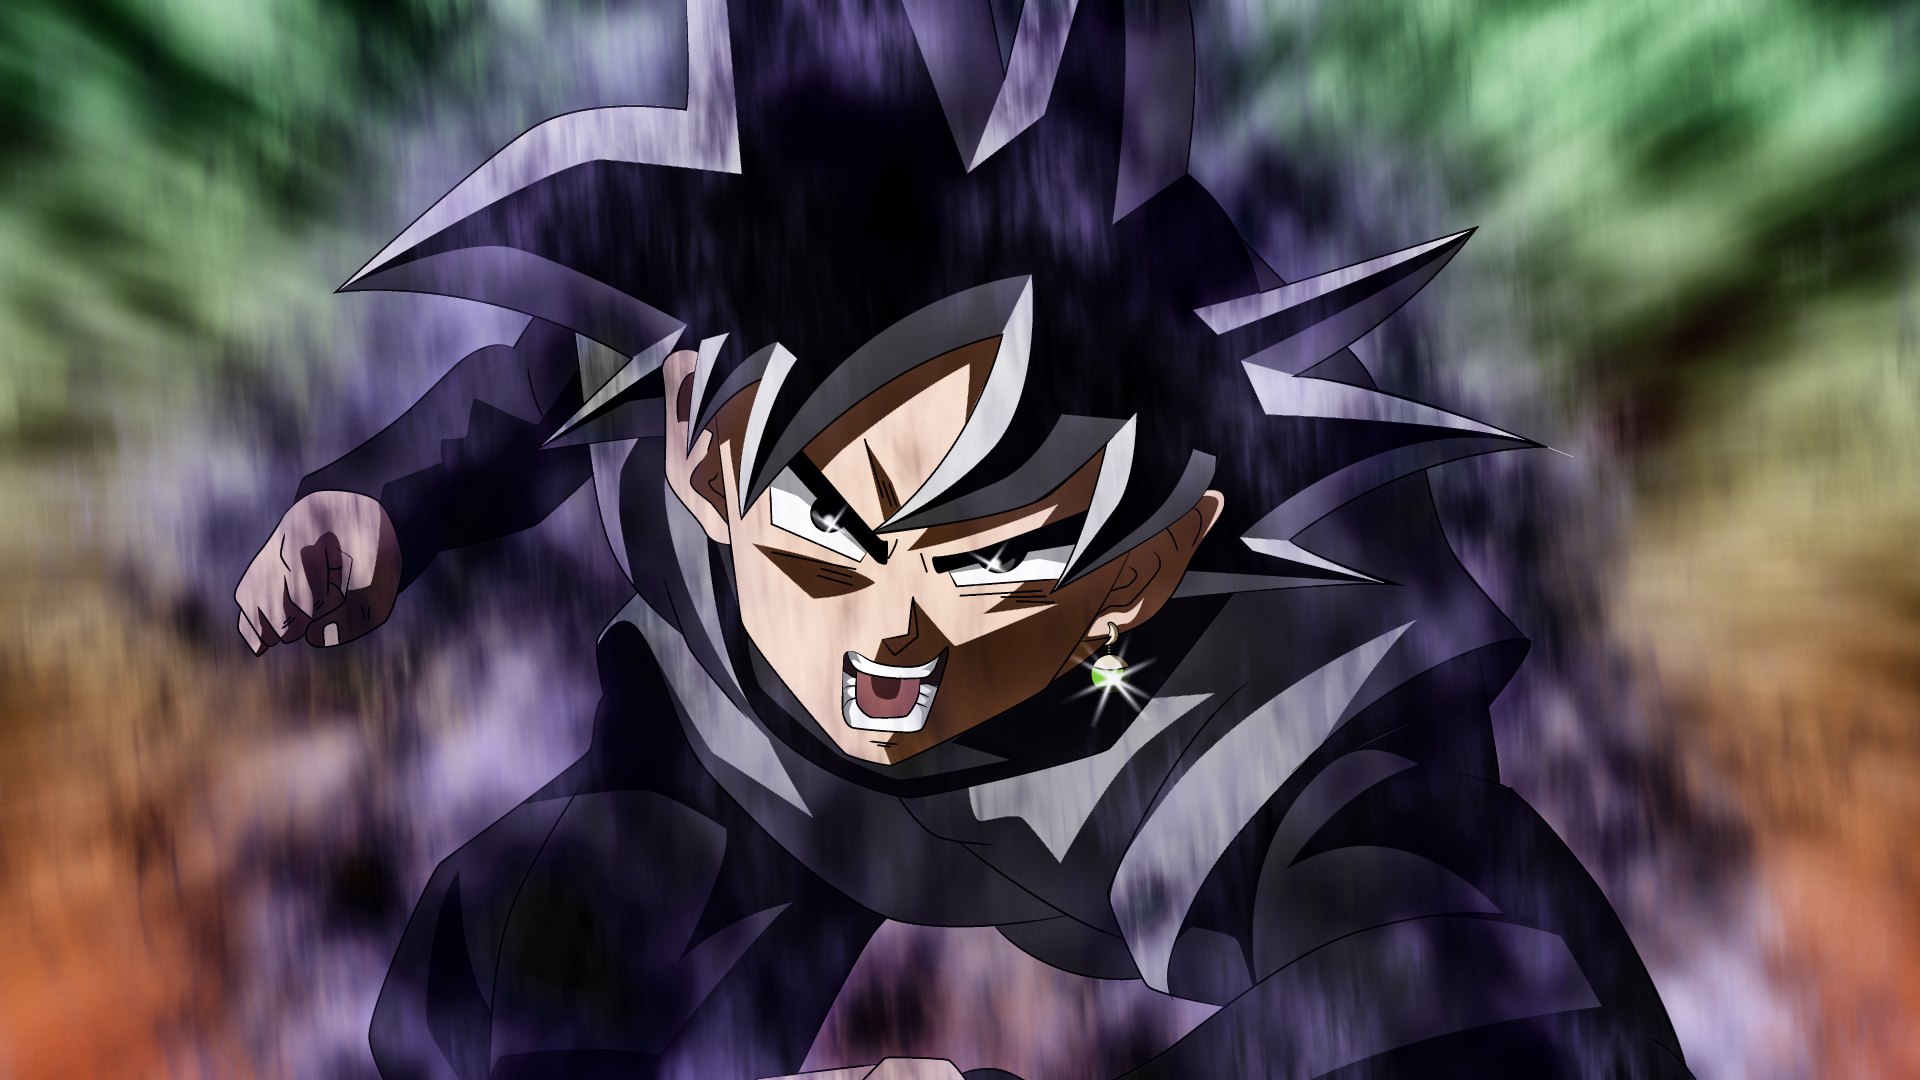 SSG Goku vs Goku Black